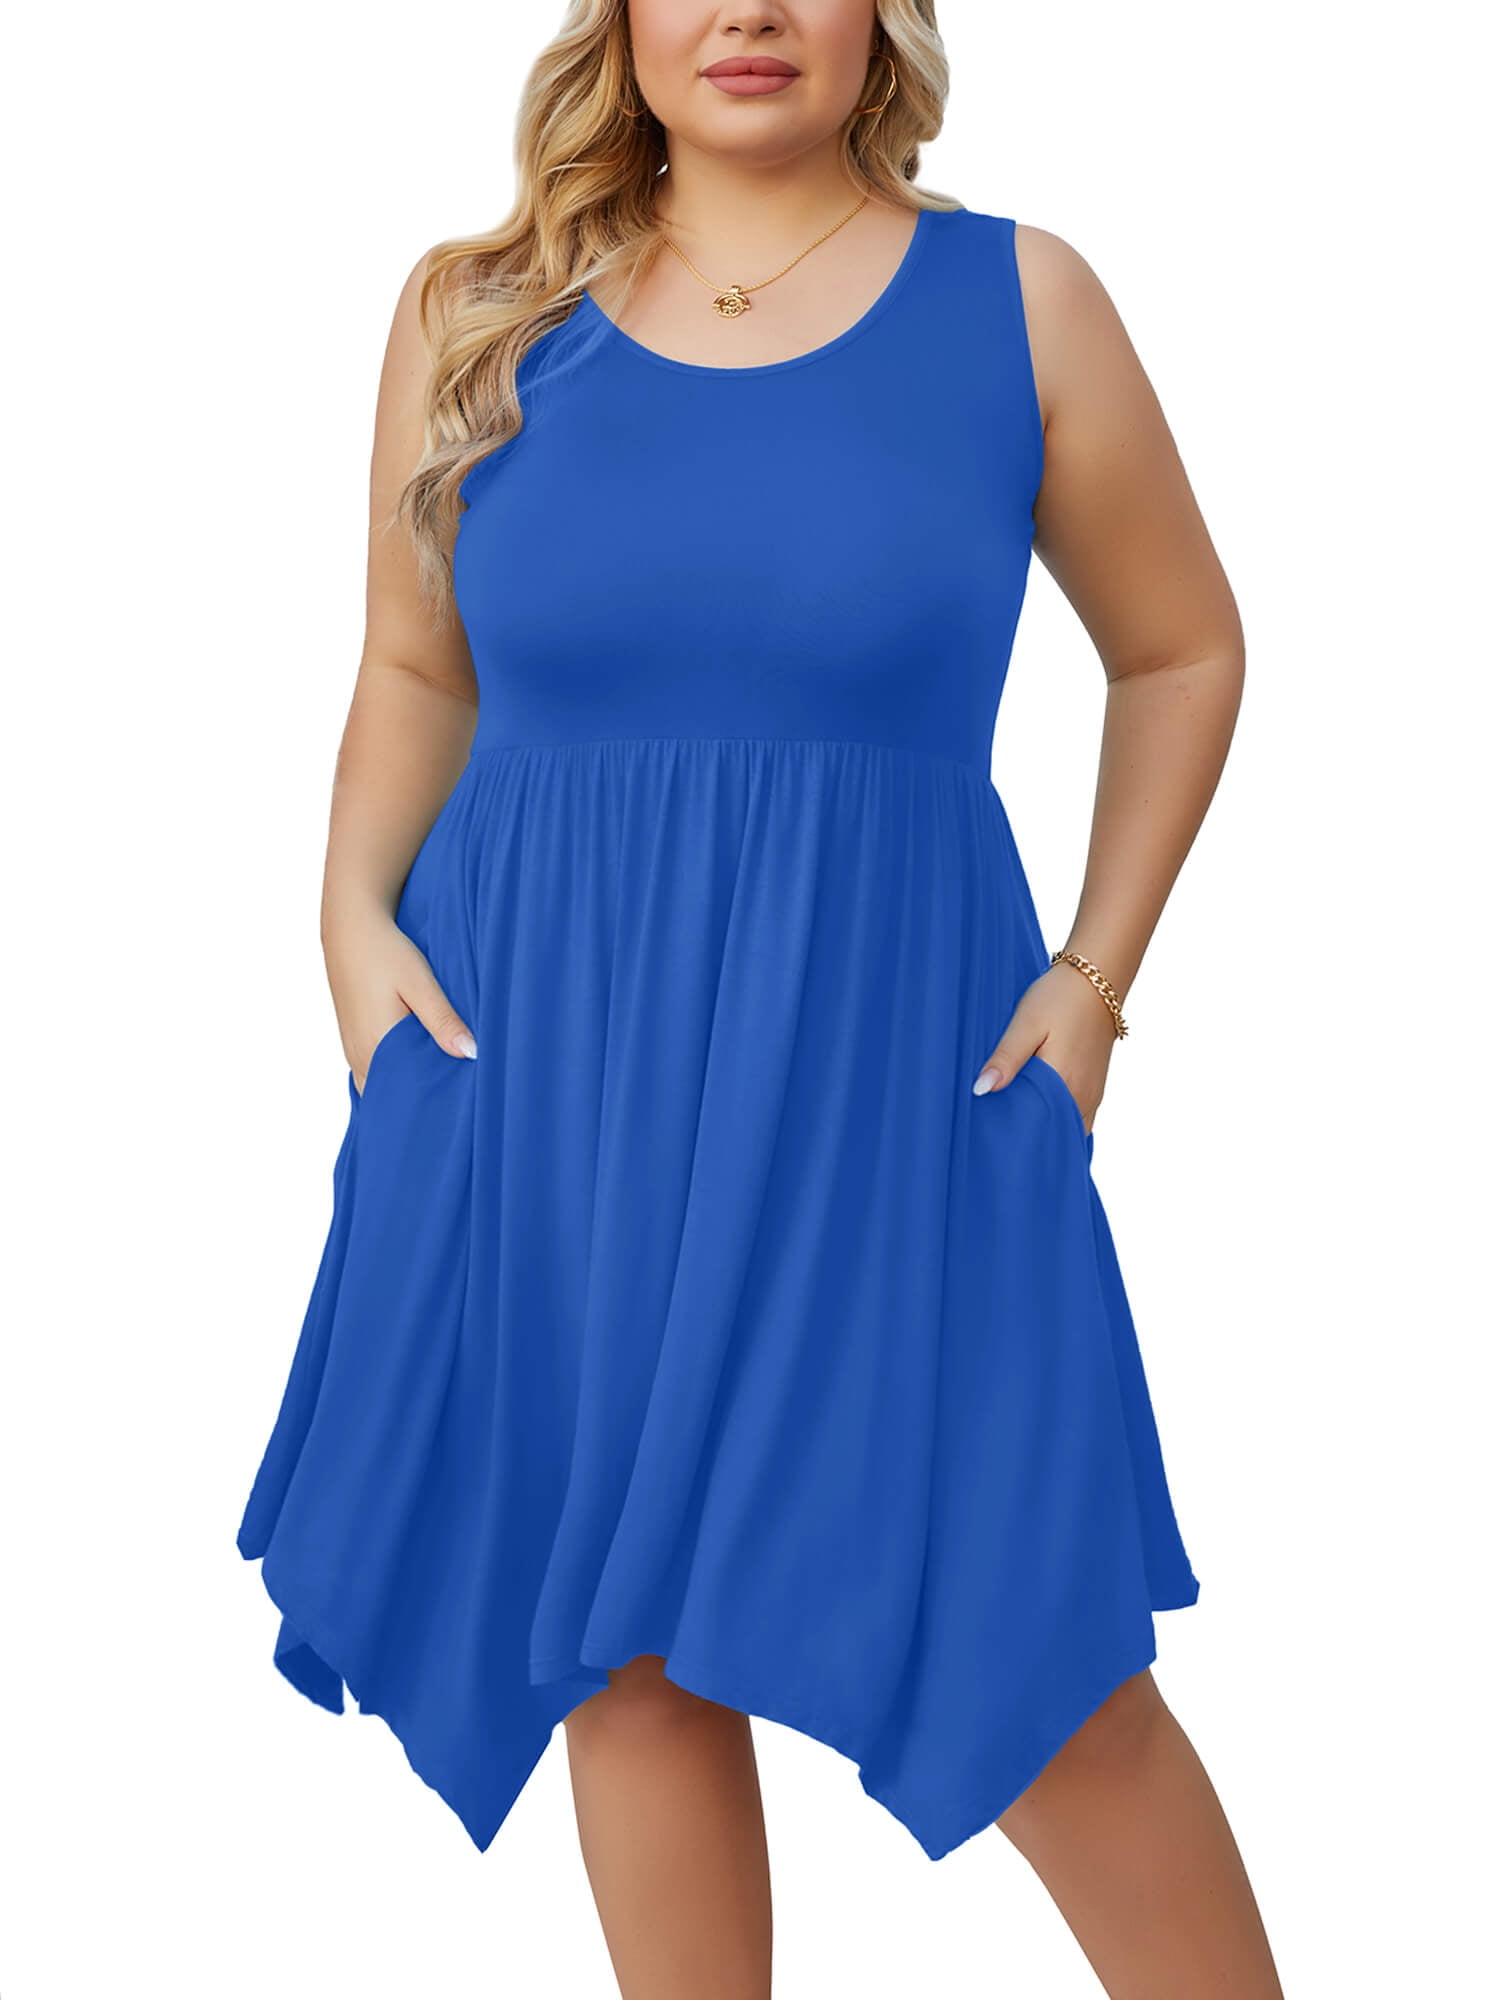 SHOWMALL Women Plus Size Dress Sleeveless Summer Dress Irregular Hem ...